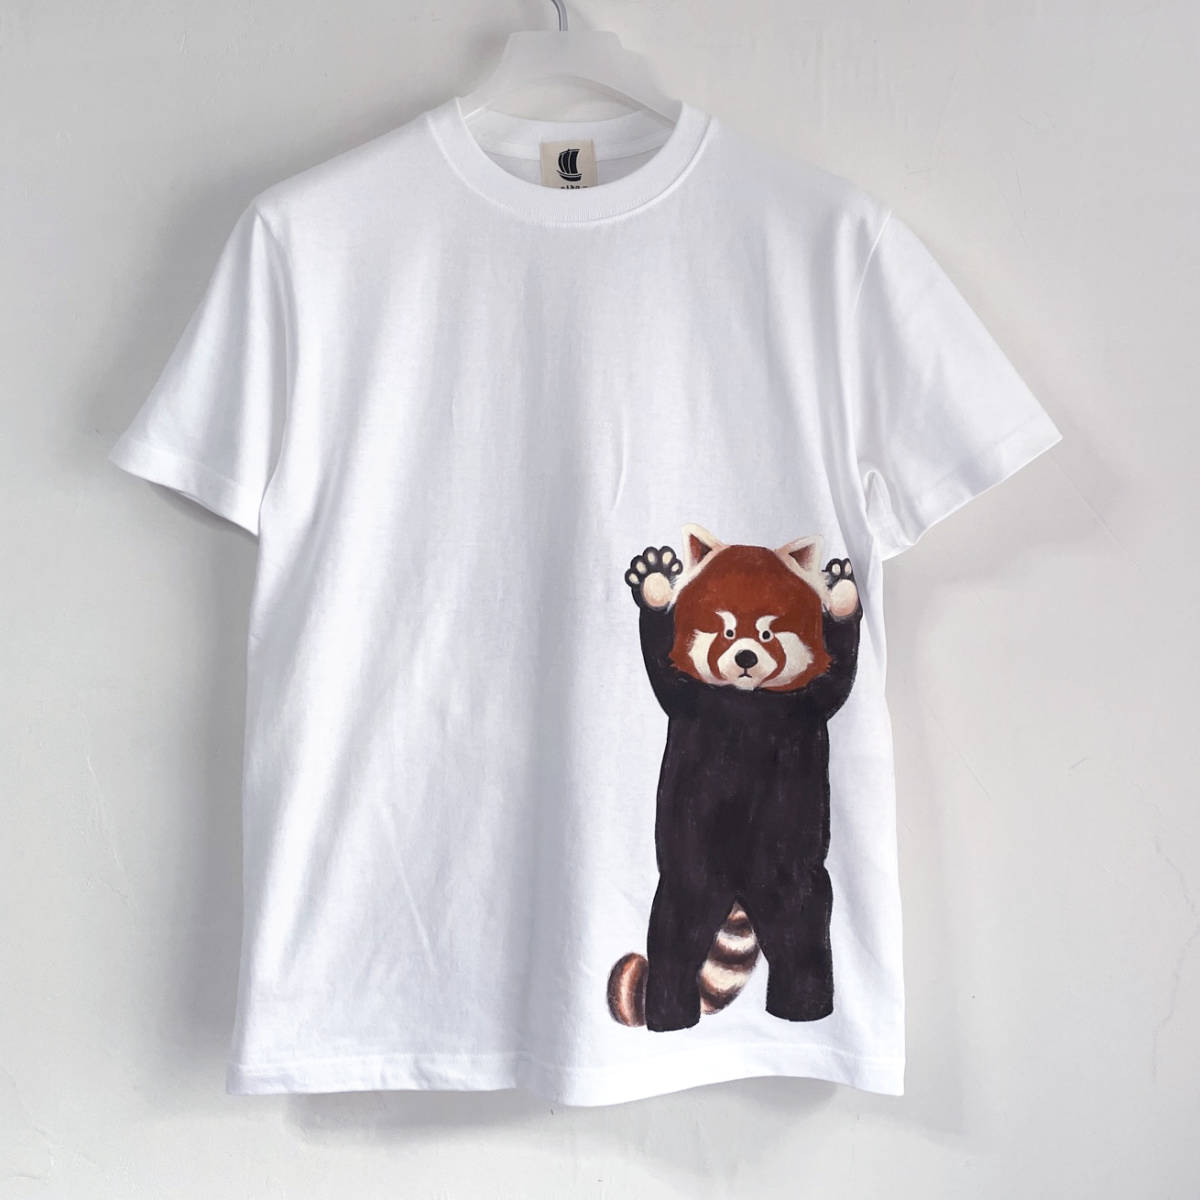 남자 티셔츠 XXL 사이즈 흰색 덜 빵 패턴 티셔츠 흰색 수제 손으로 그린 티셔츠 동물, XL 사이즈 이상, 목이 둥글게 파인 옷, 무늬가 있는